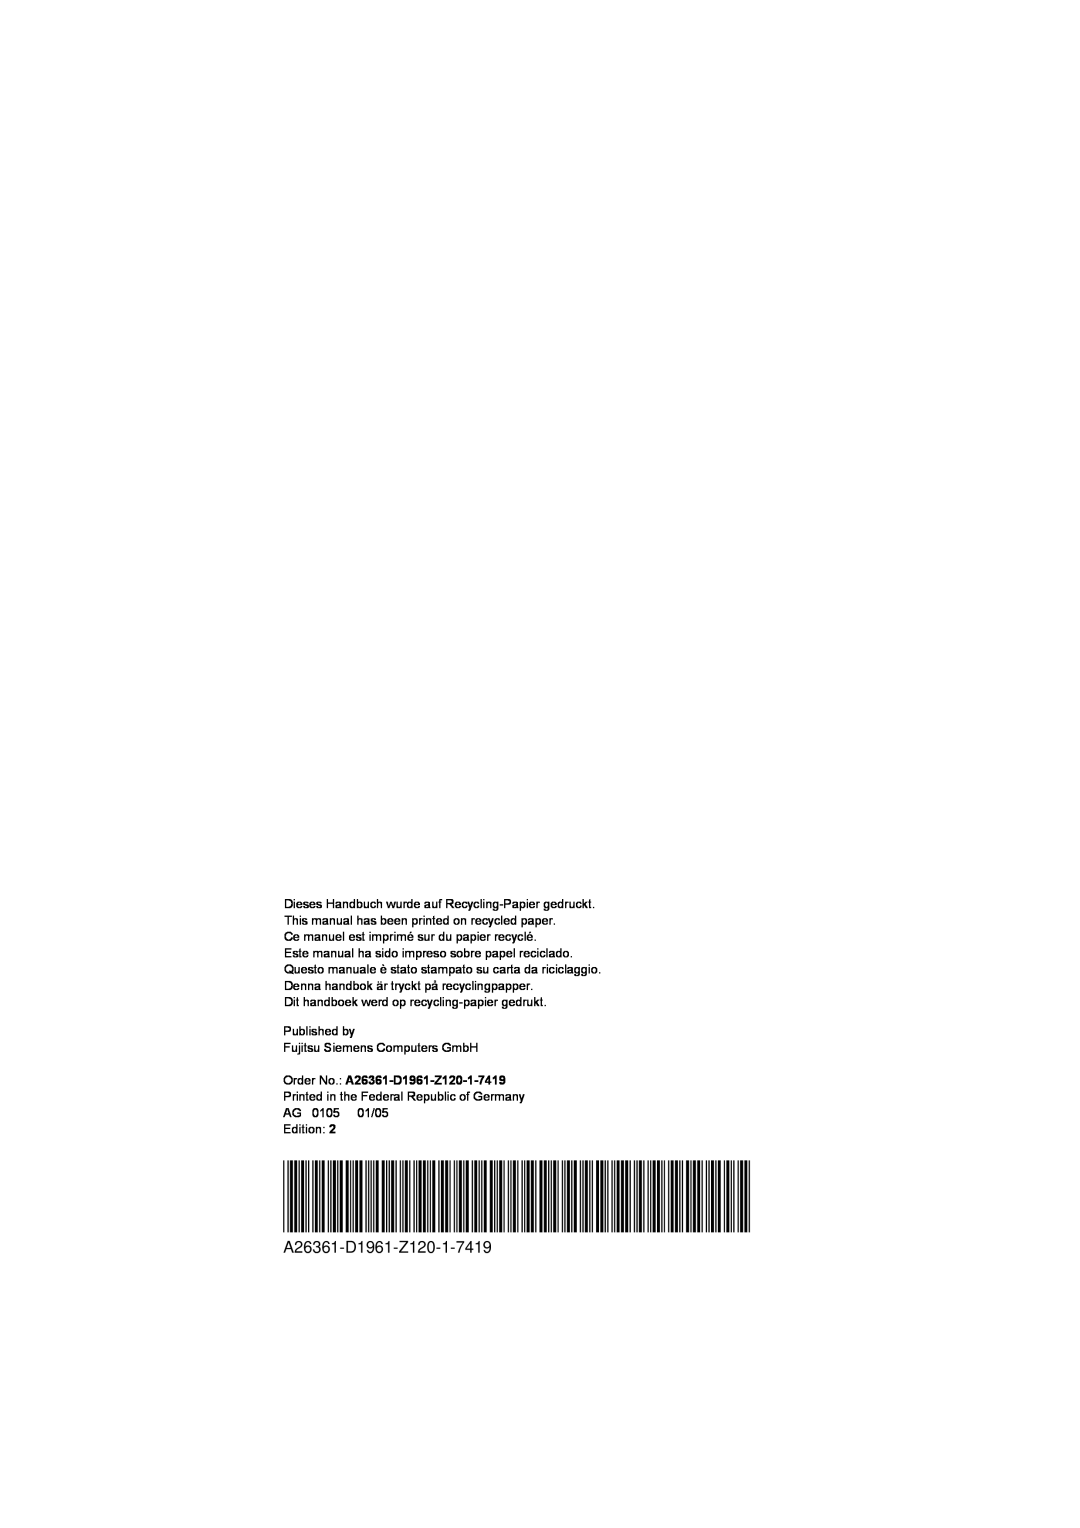 Fujitsu technical manual Order No. A26361-D1961-Z120-1-7419 